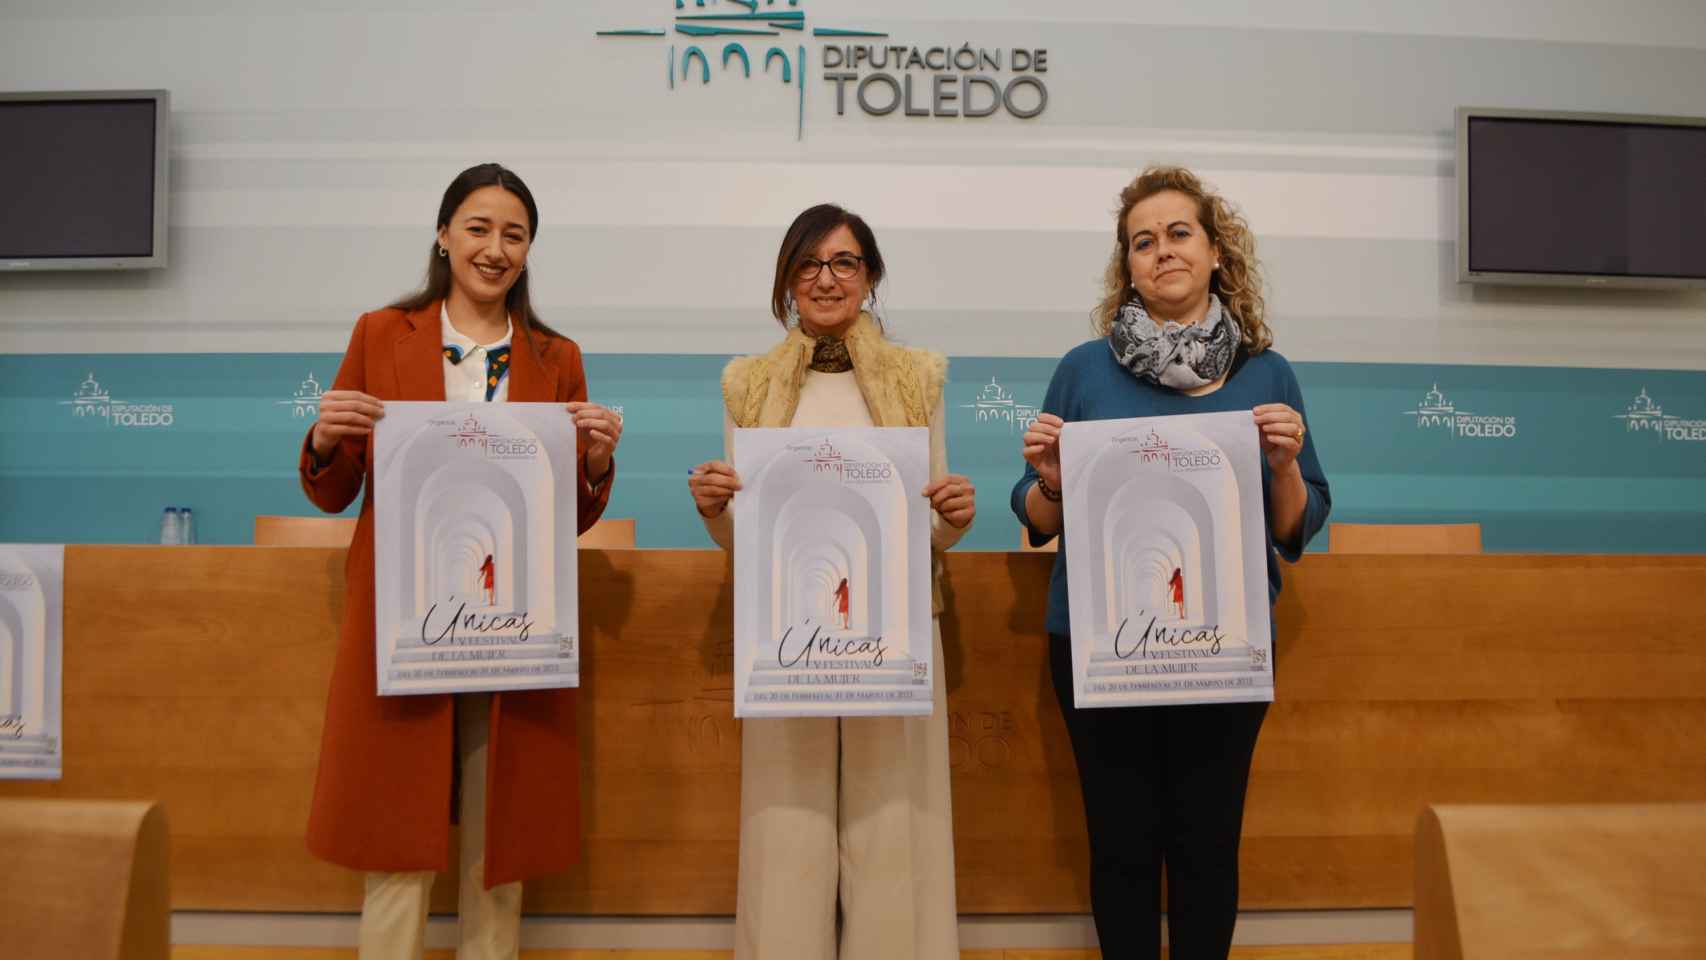 Presentación del Festival de Mujeres 'Únicas' en la Diputación de Toledo